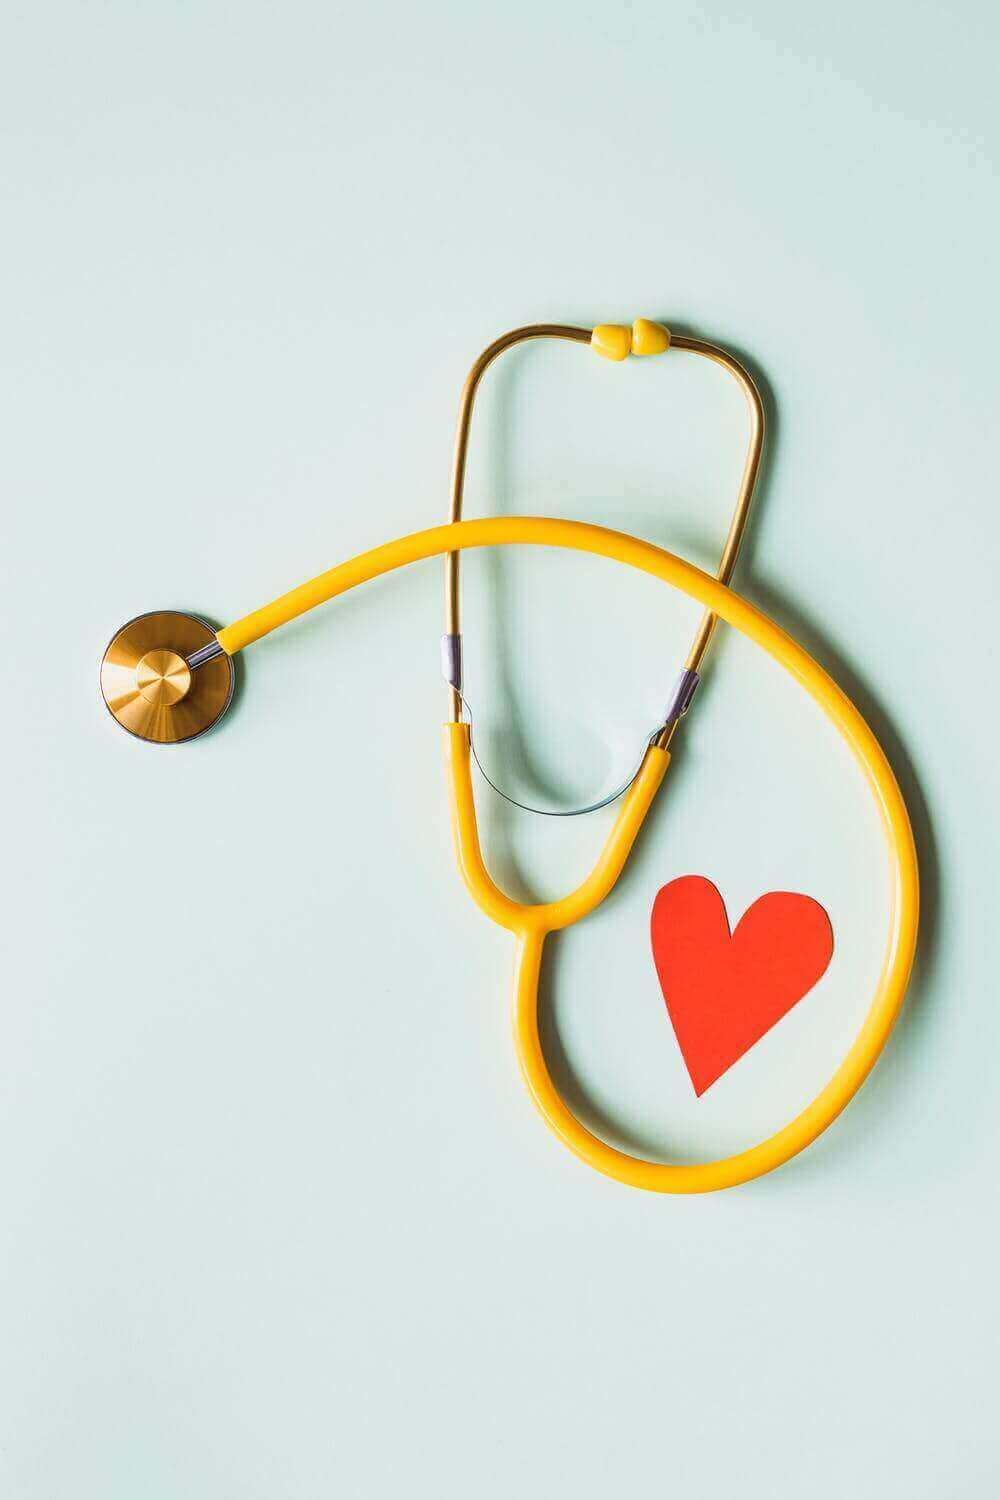 बंजारा हिल्स, हैदराबाद में हृदय स्वास्थ्य जांच